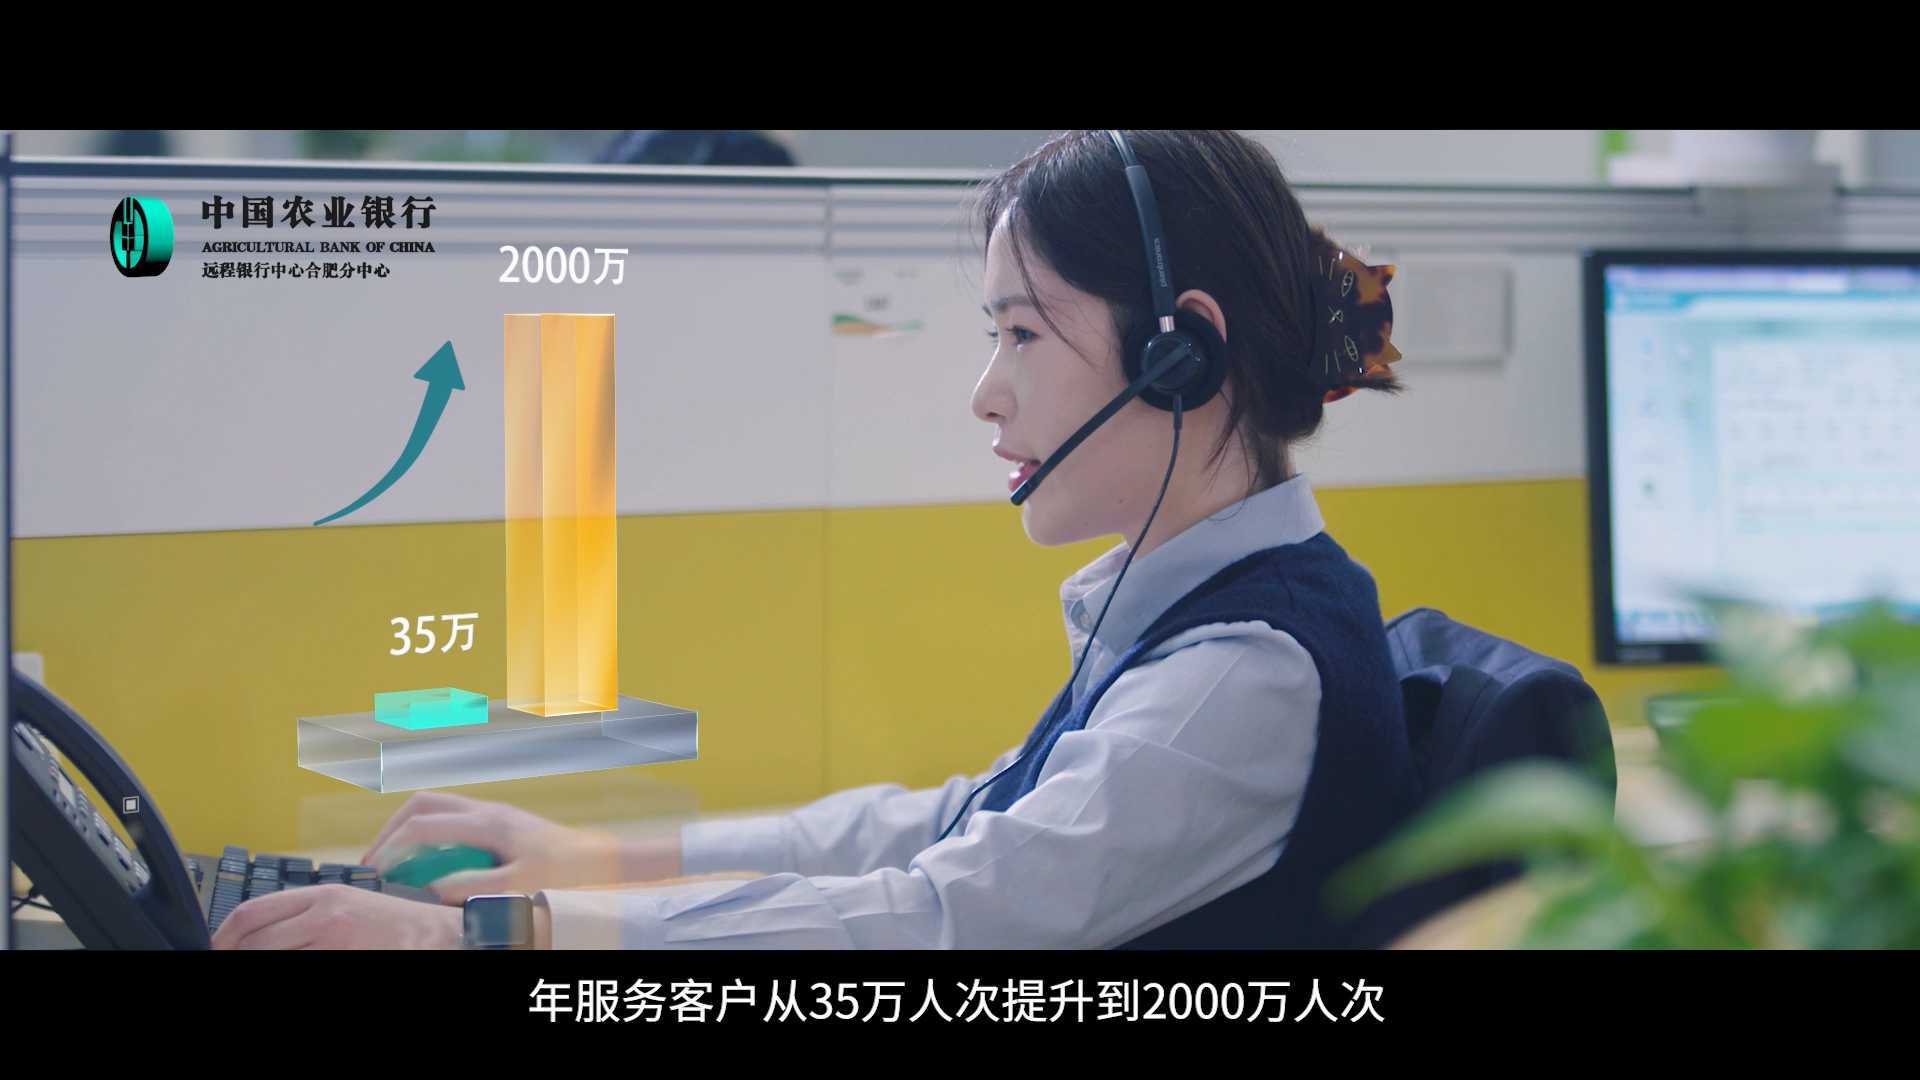 10周年中国农业银行宣传片拍摄|合肥宣传片拍摄|宣传片制作公司